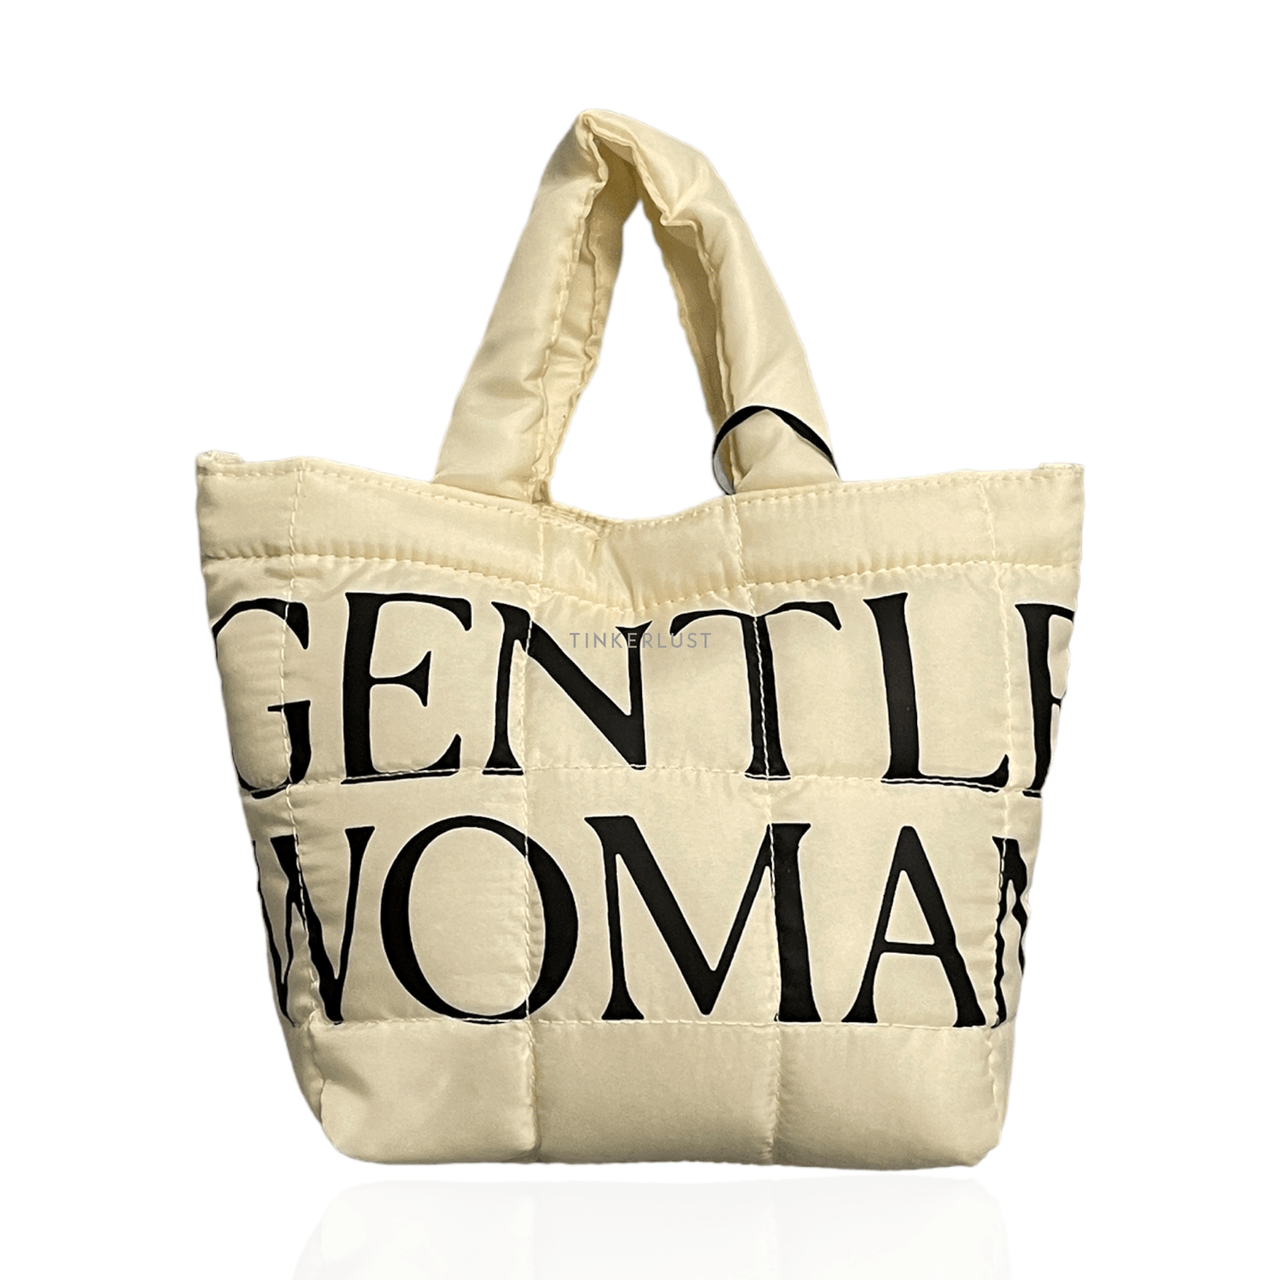 Gentlewomen Cream Handbag